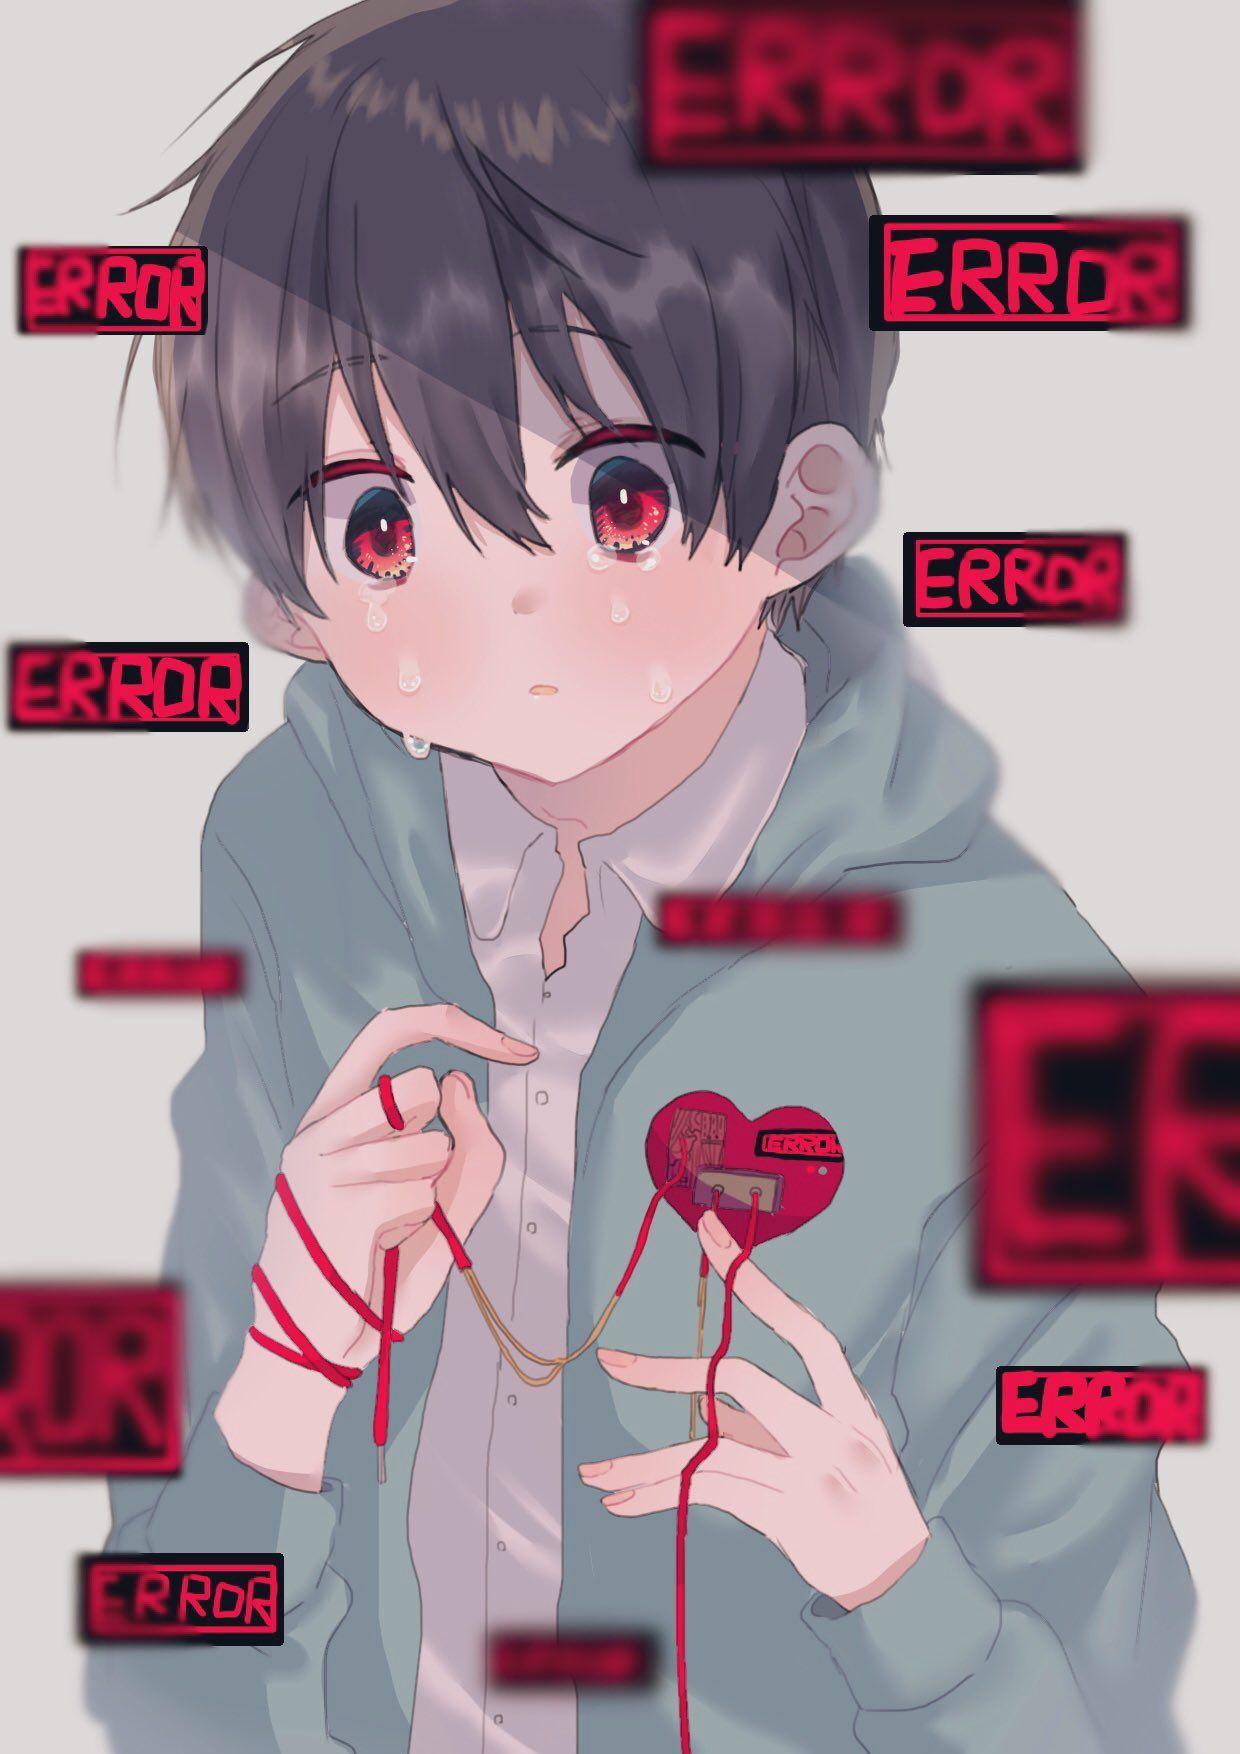 Sad Anime Boy Wallpapers